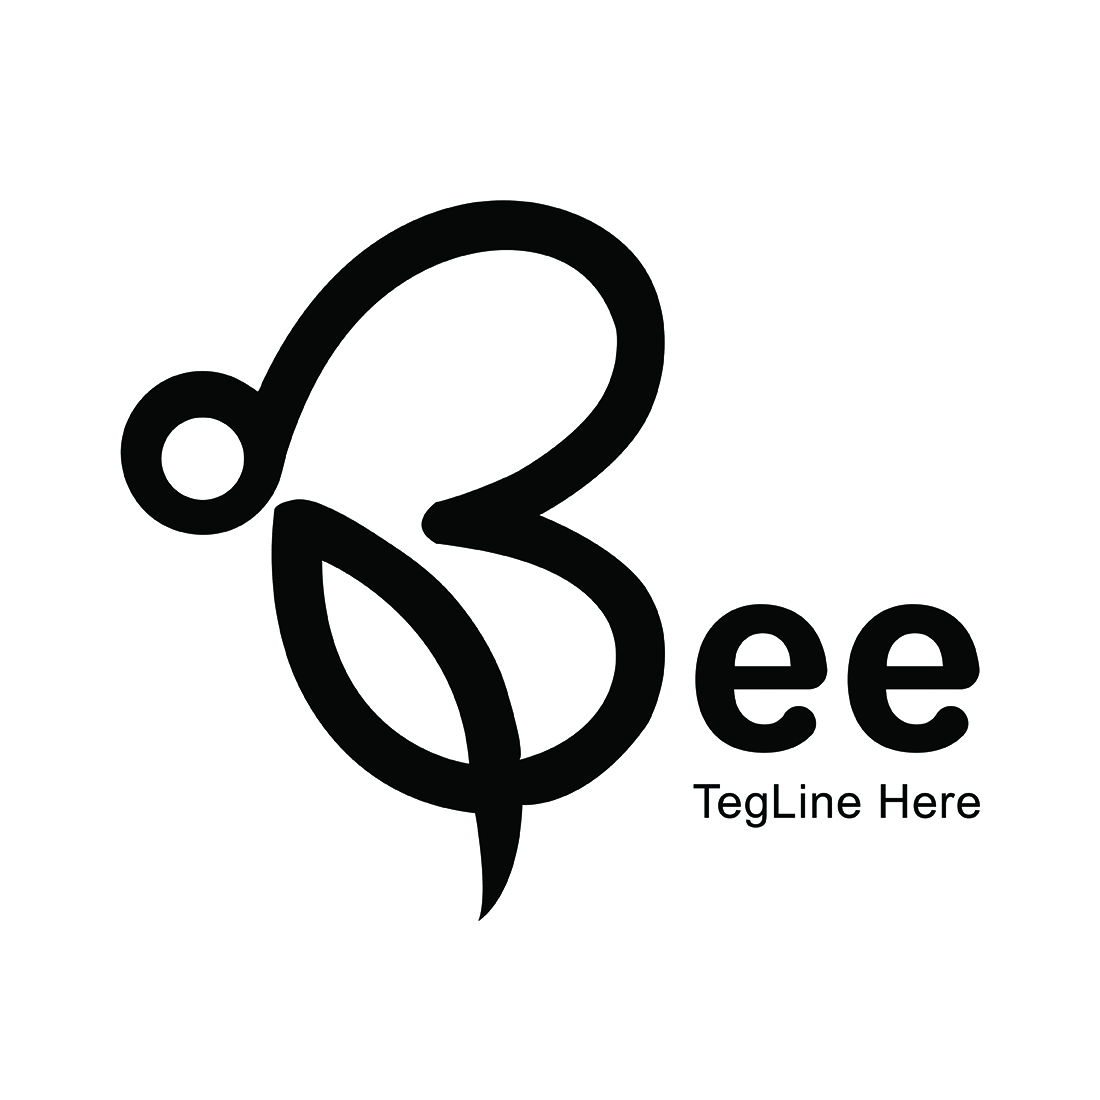 B Letter Logo - Bee Logo Design cover image.